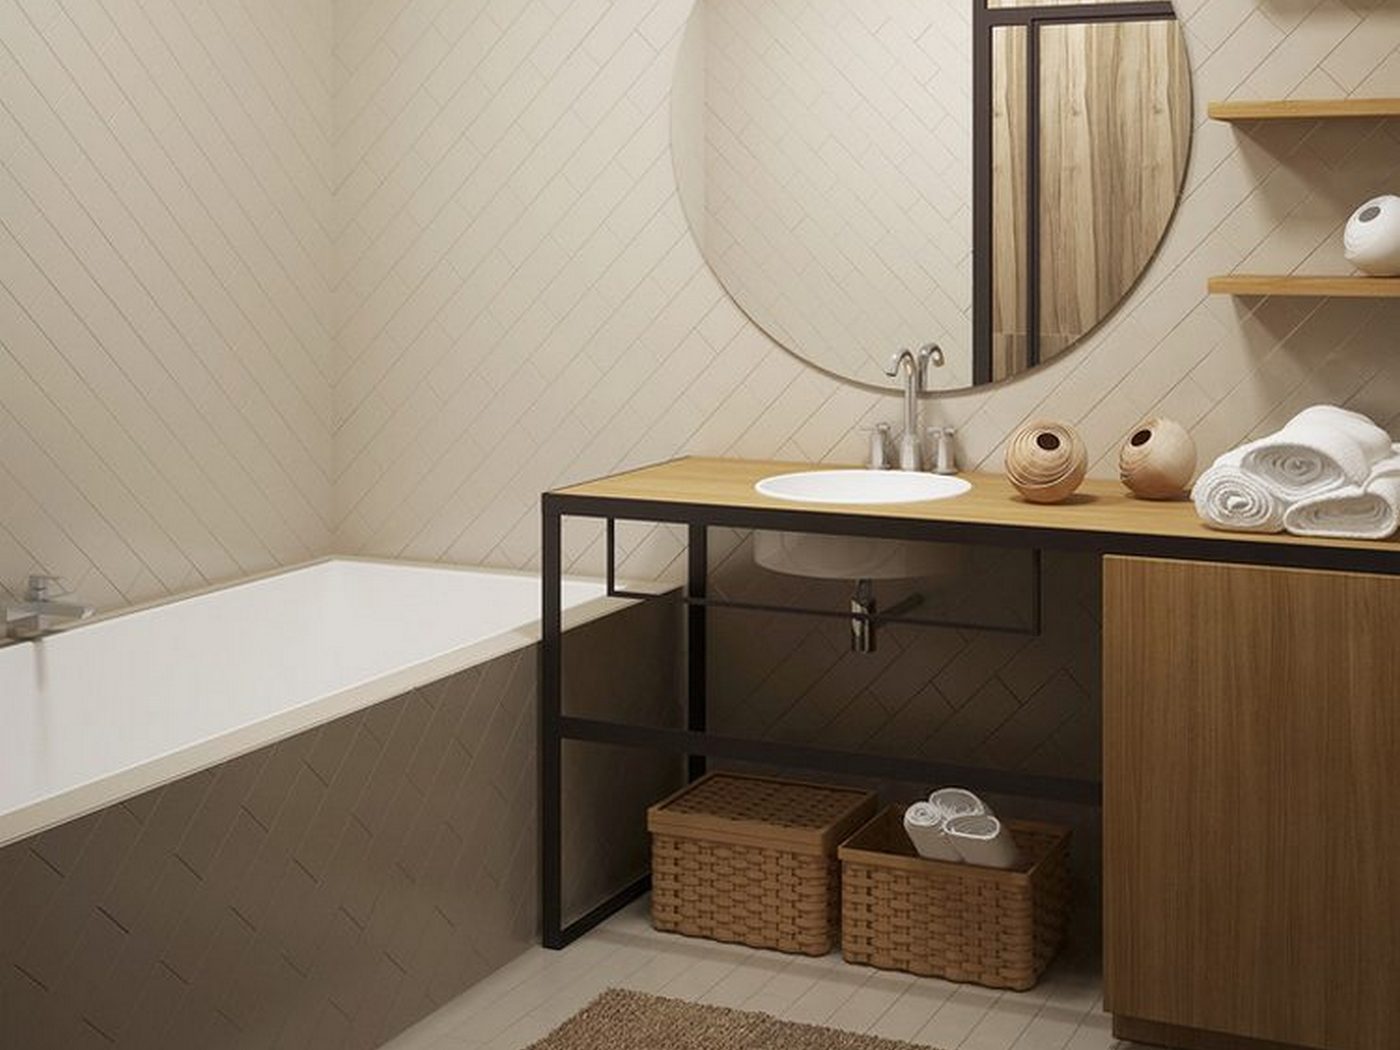 Fa mennyezet borítás, téglafal, modern konyha és fürdőszoba 37m2-es kis lakásban